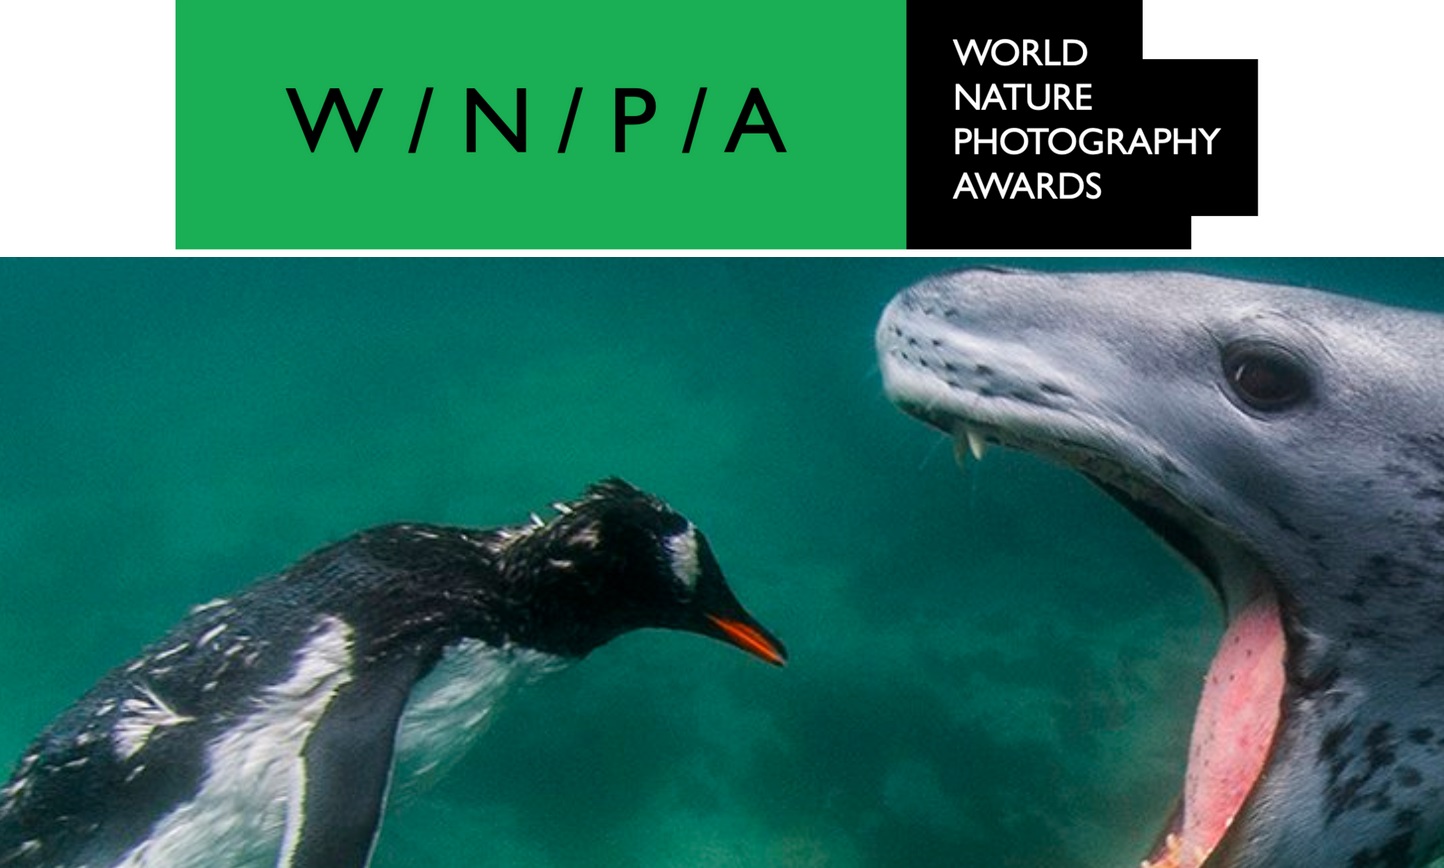 World Nature Photography Awards 2022 - logo